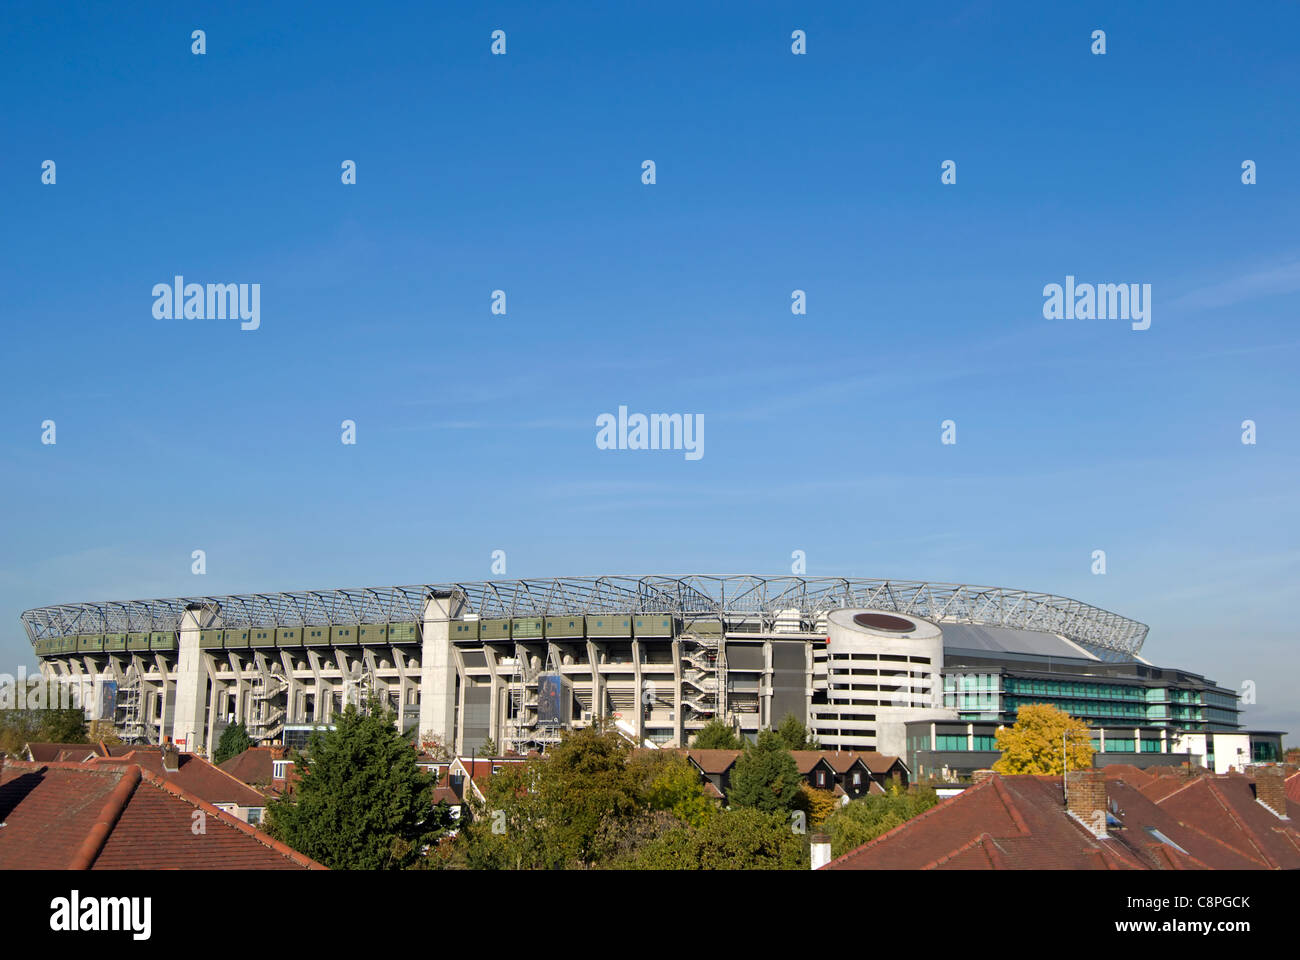 Twickenham Stadion oder Rugby ground, Twickenham, Middlesex, england Stockfoto